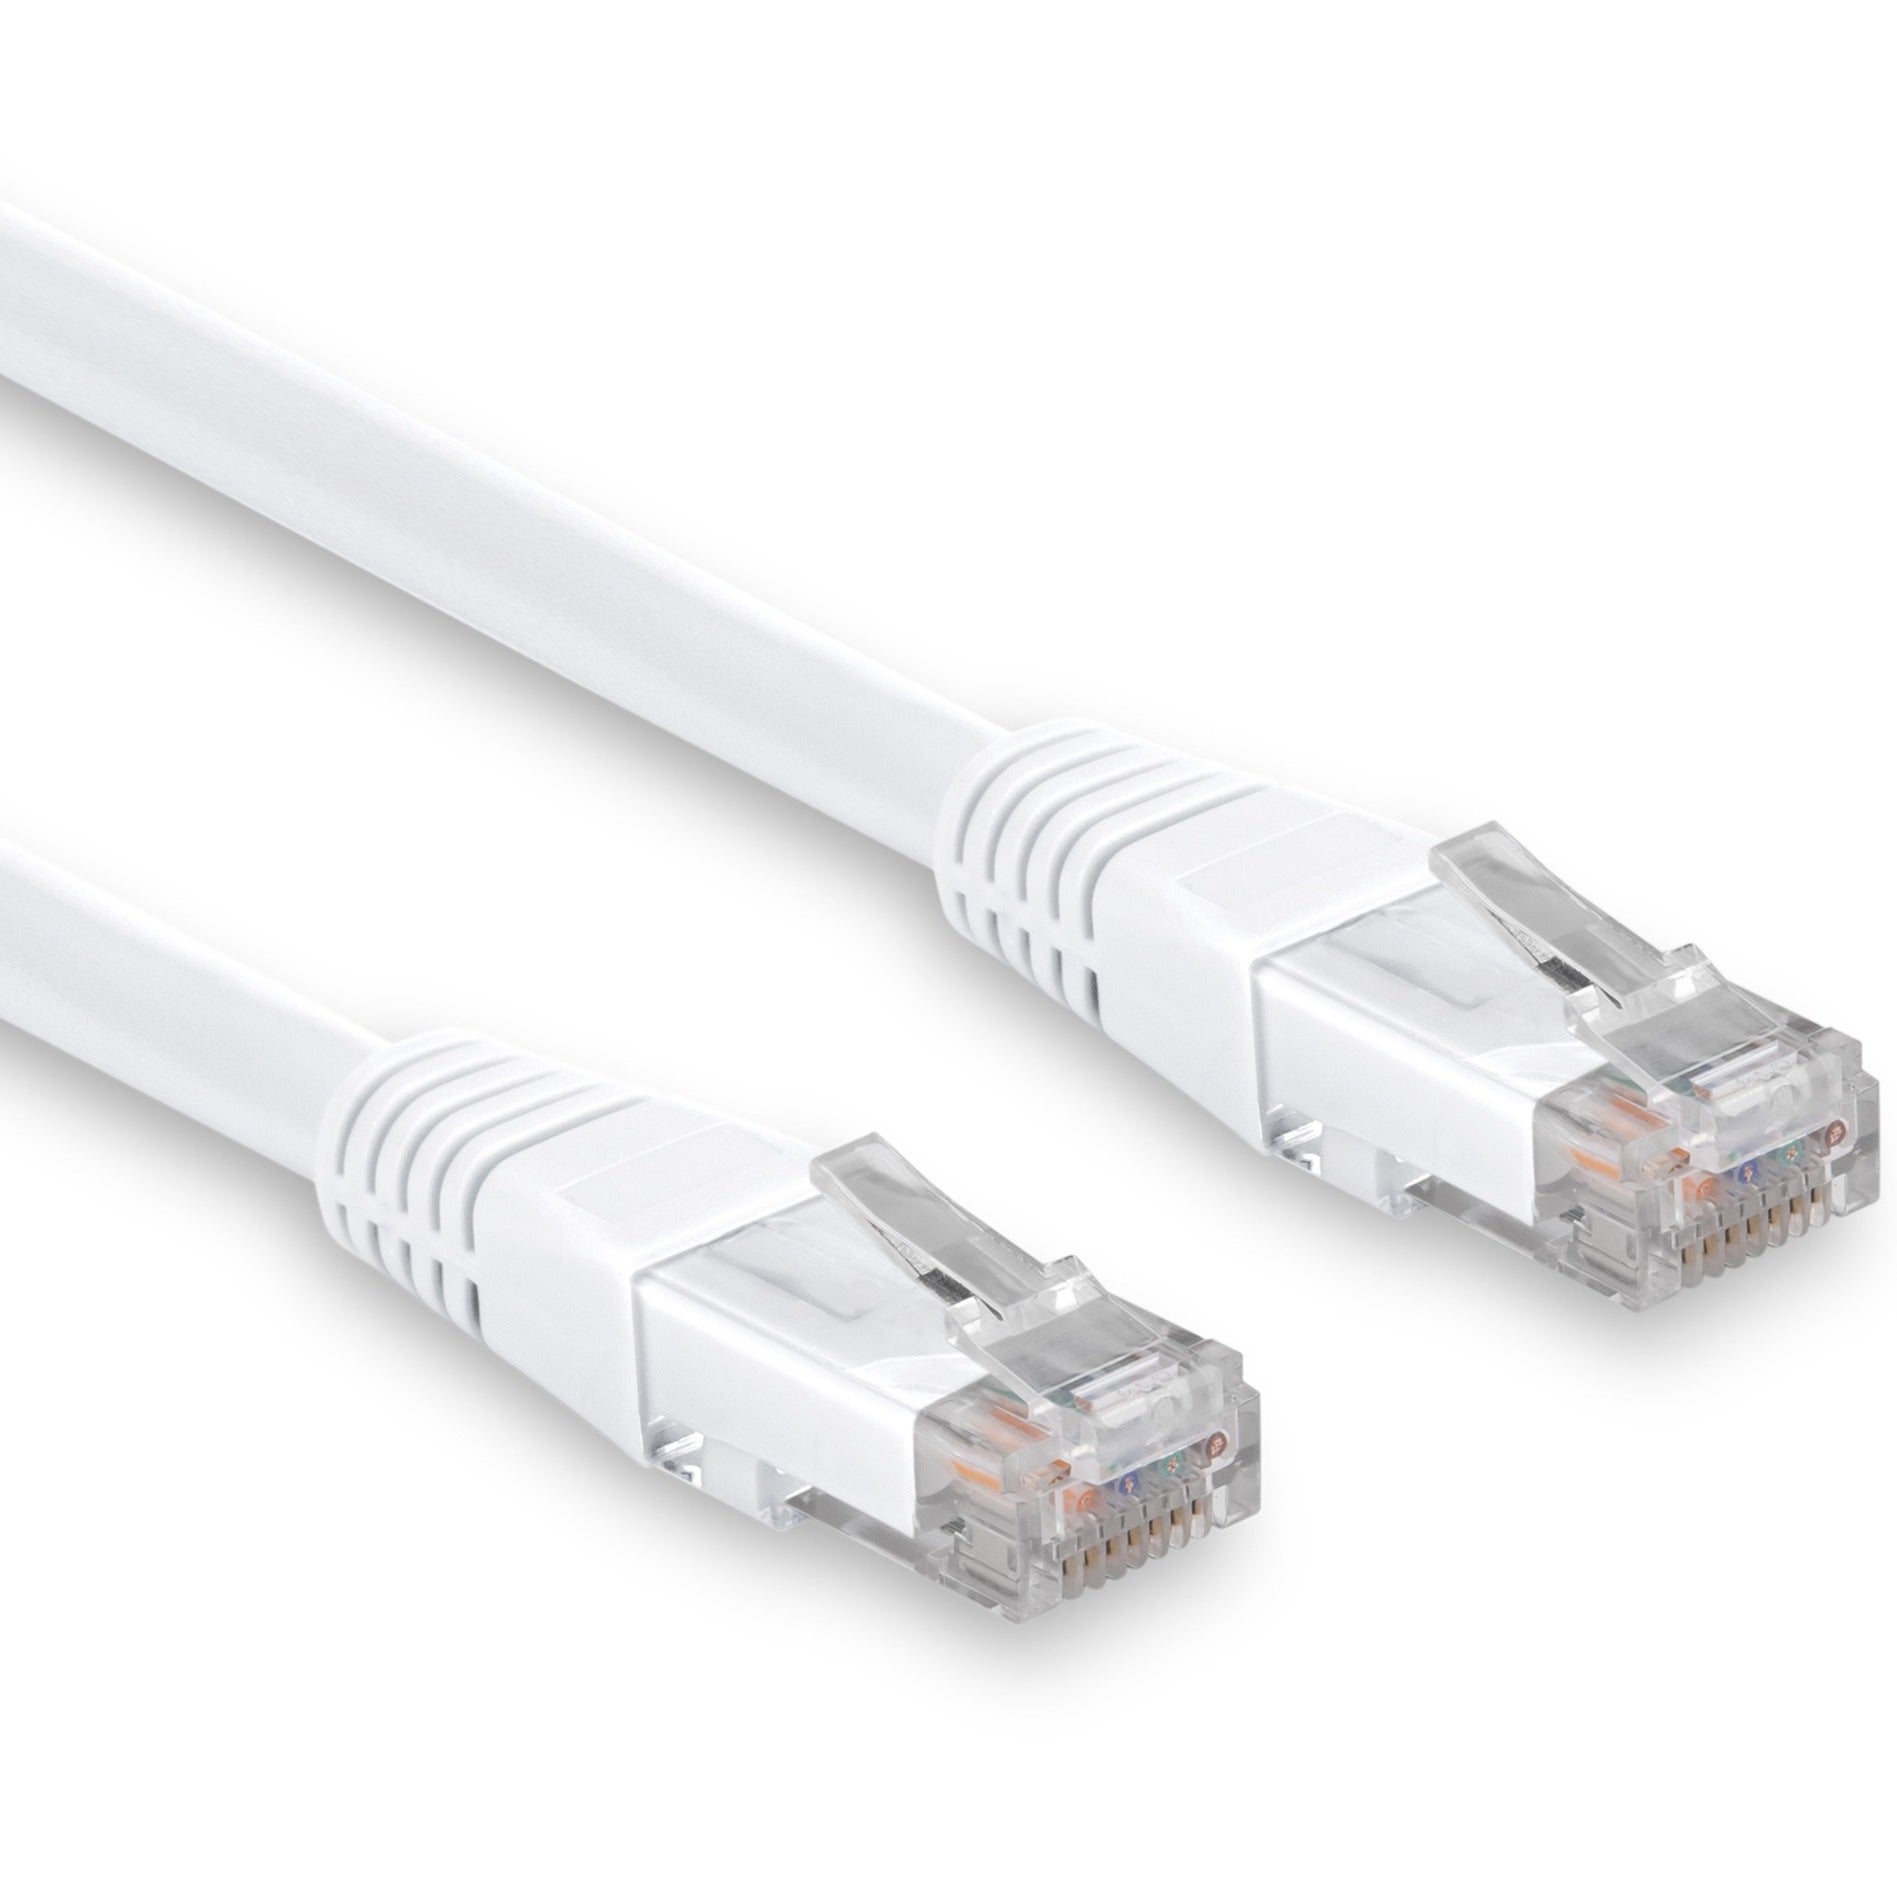 Rocstor Y10C309-WT Cat.6 Network Cable, 6" Patch Cable, 10 Gbit/s, Lifetime Warranty